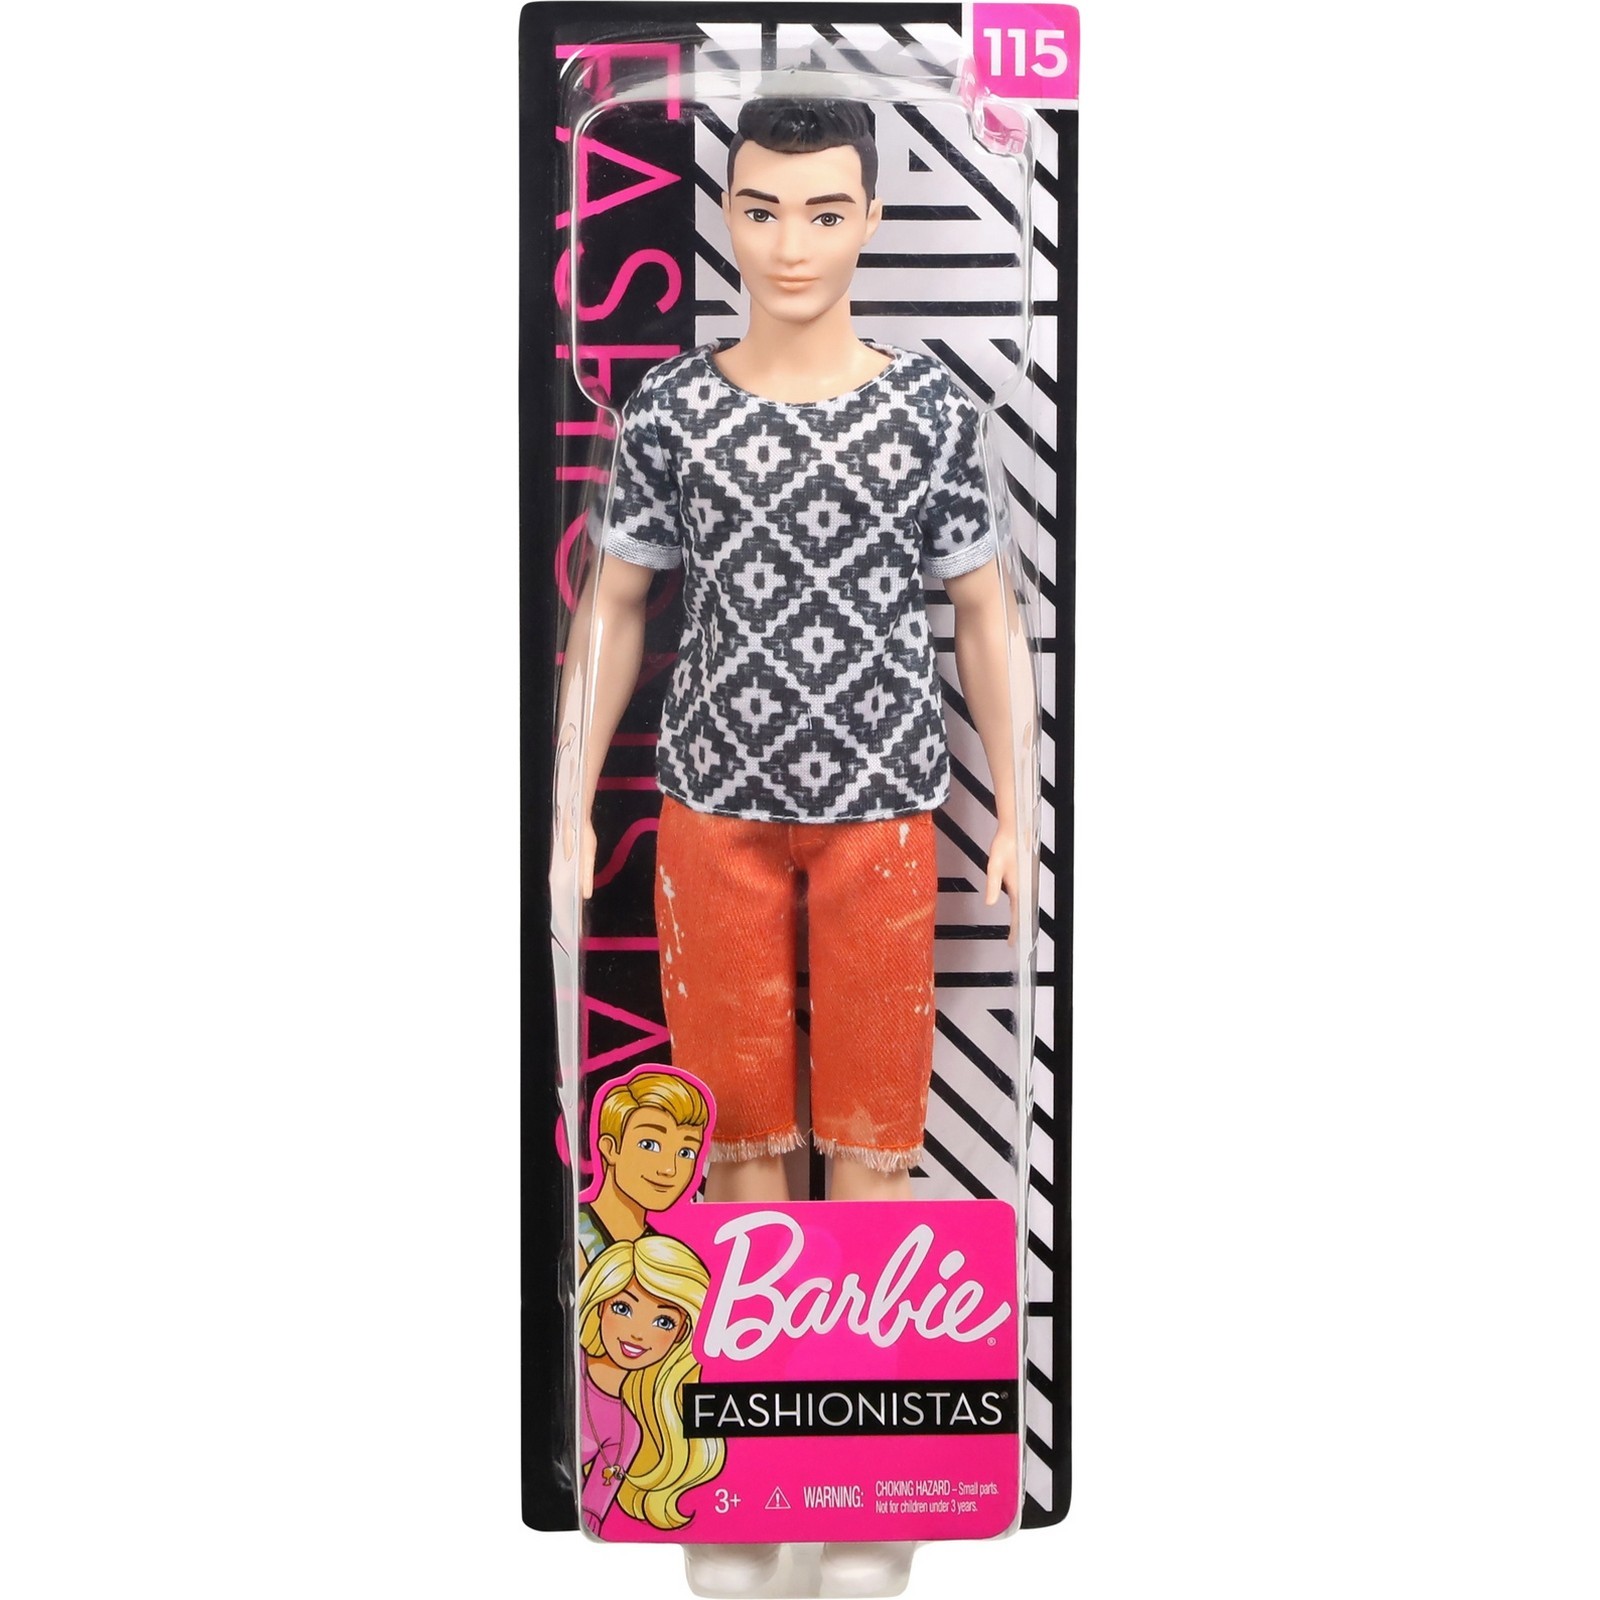 Кукла Barbie Игра с модой Кен 115 FXL62 DWK44 - фото 2